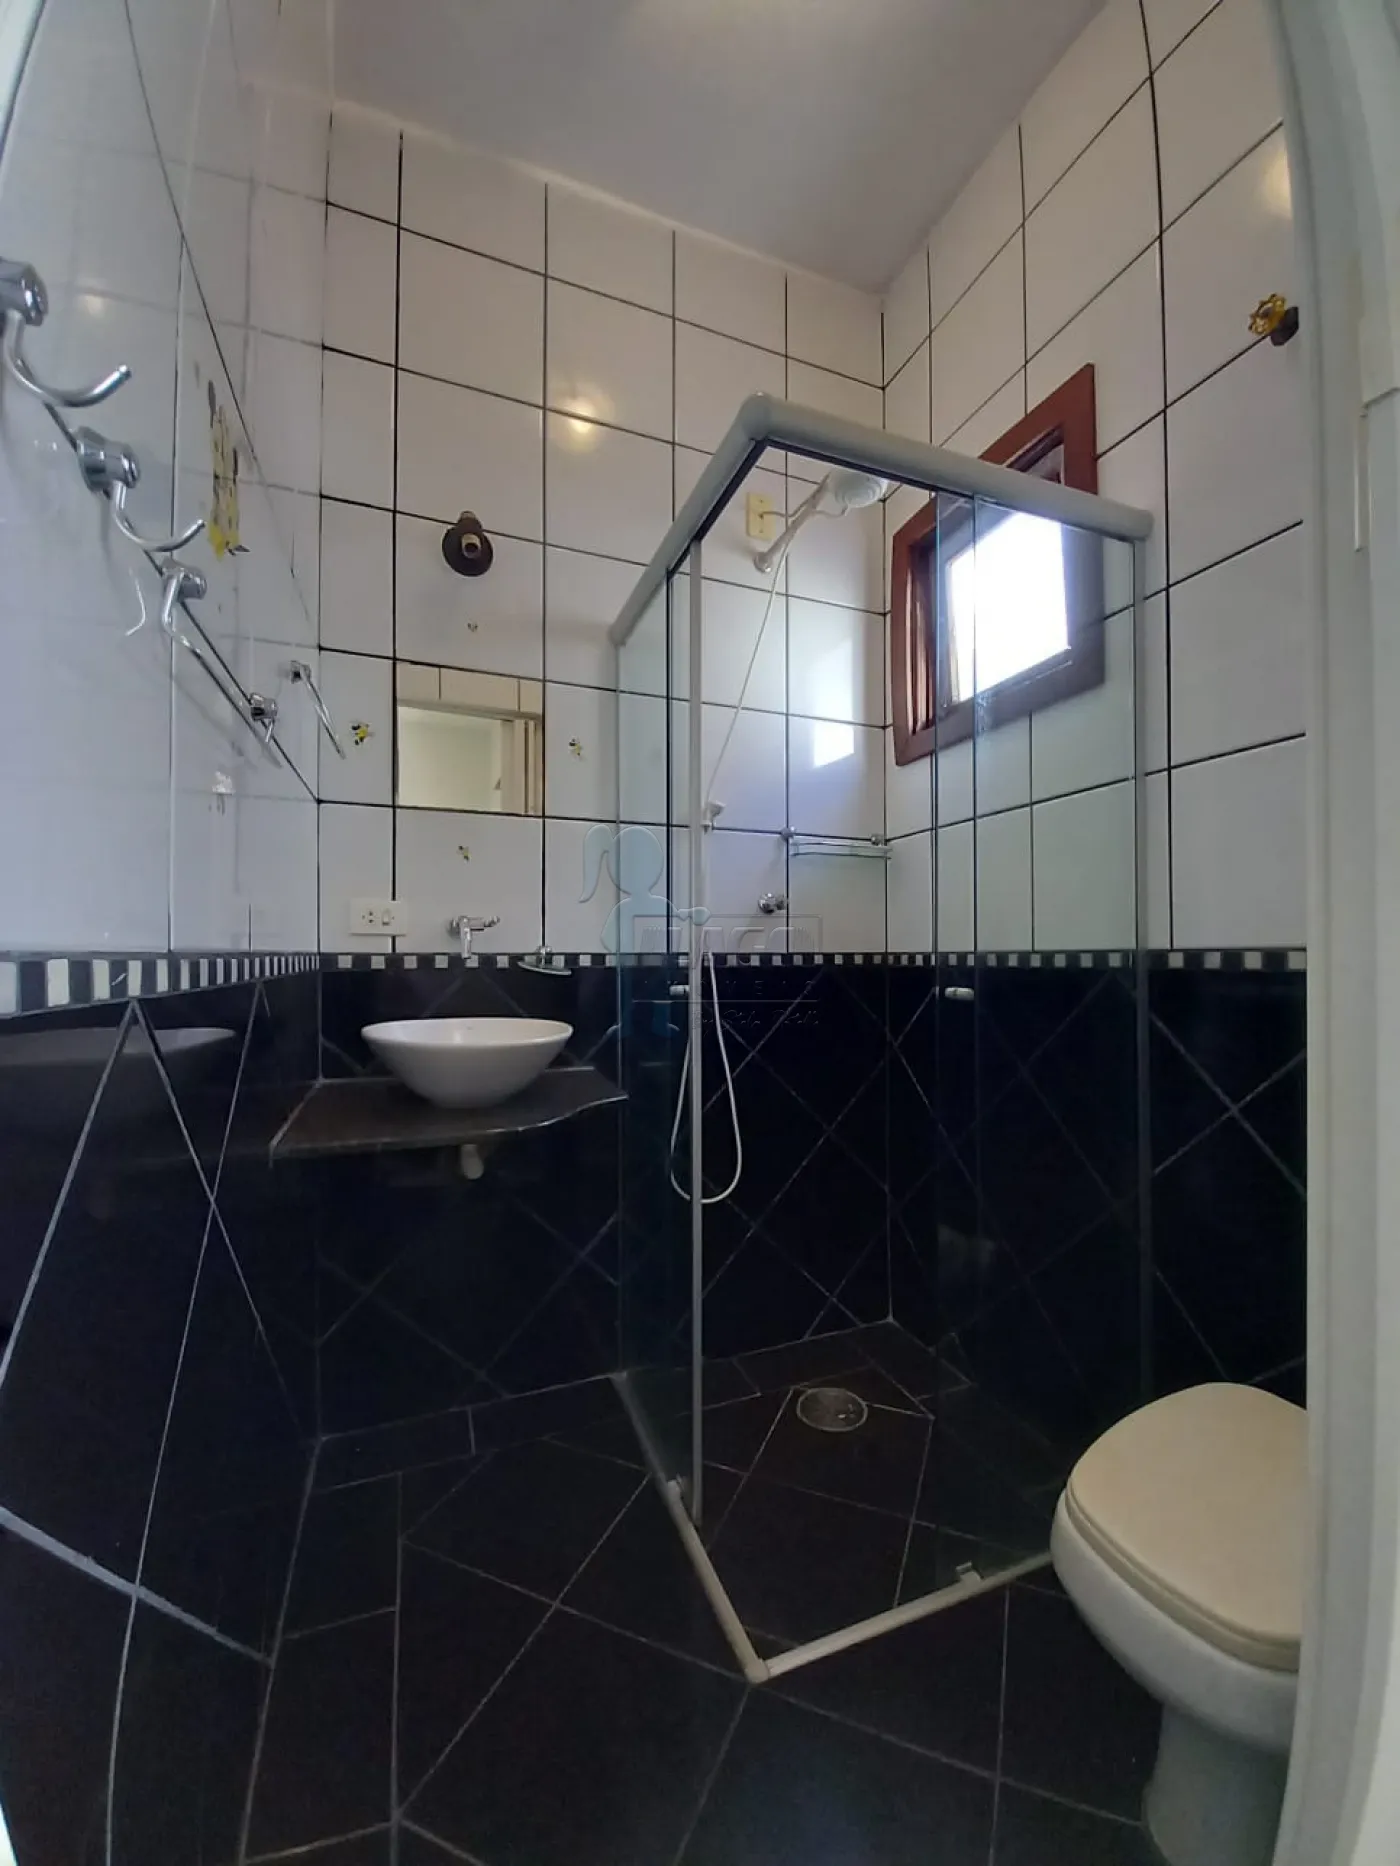 Alugar Casa / Padrão em Ribeirão Preto R$ 3.000,00 - Foto 4